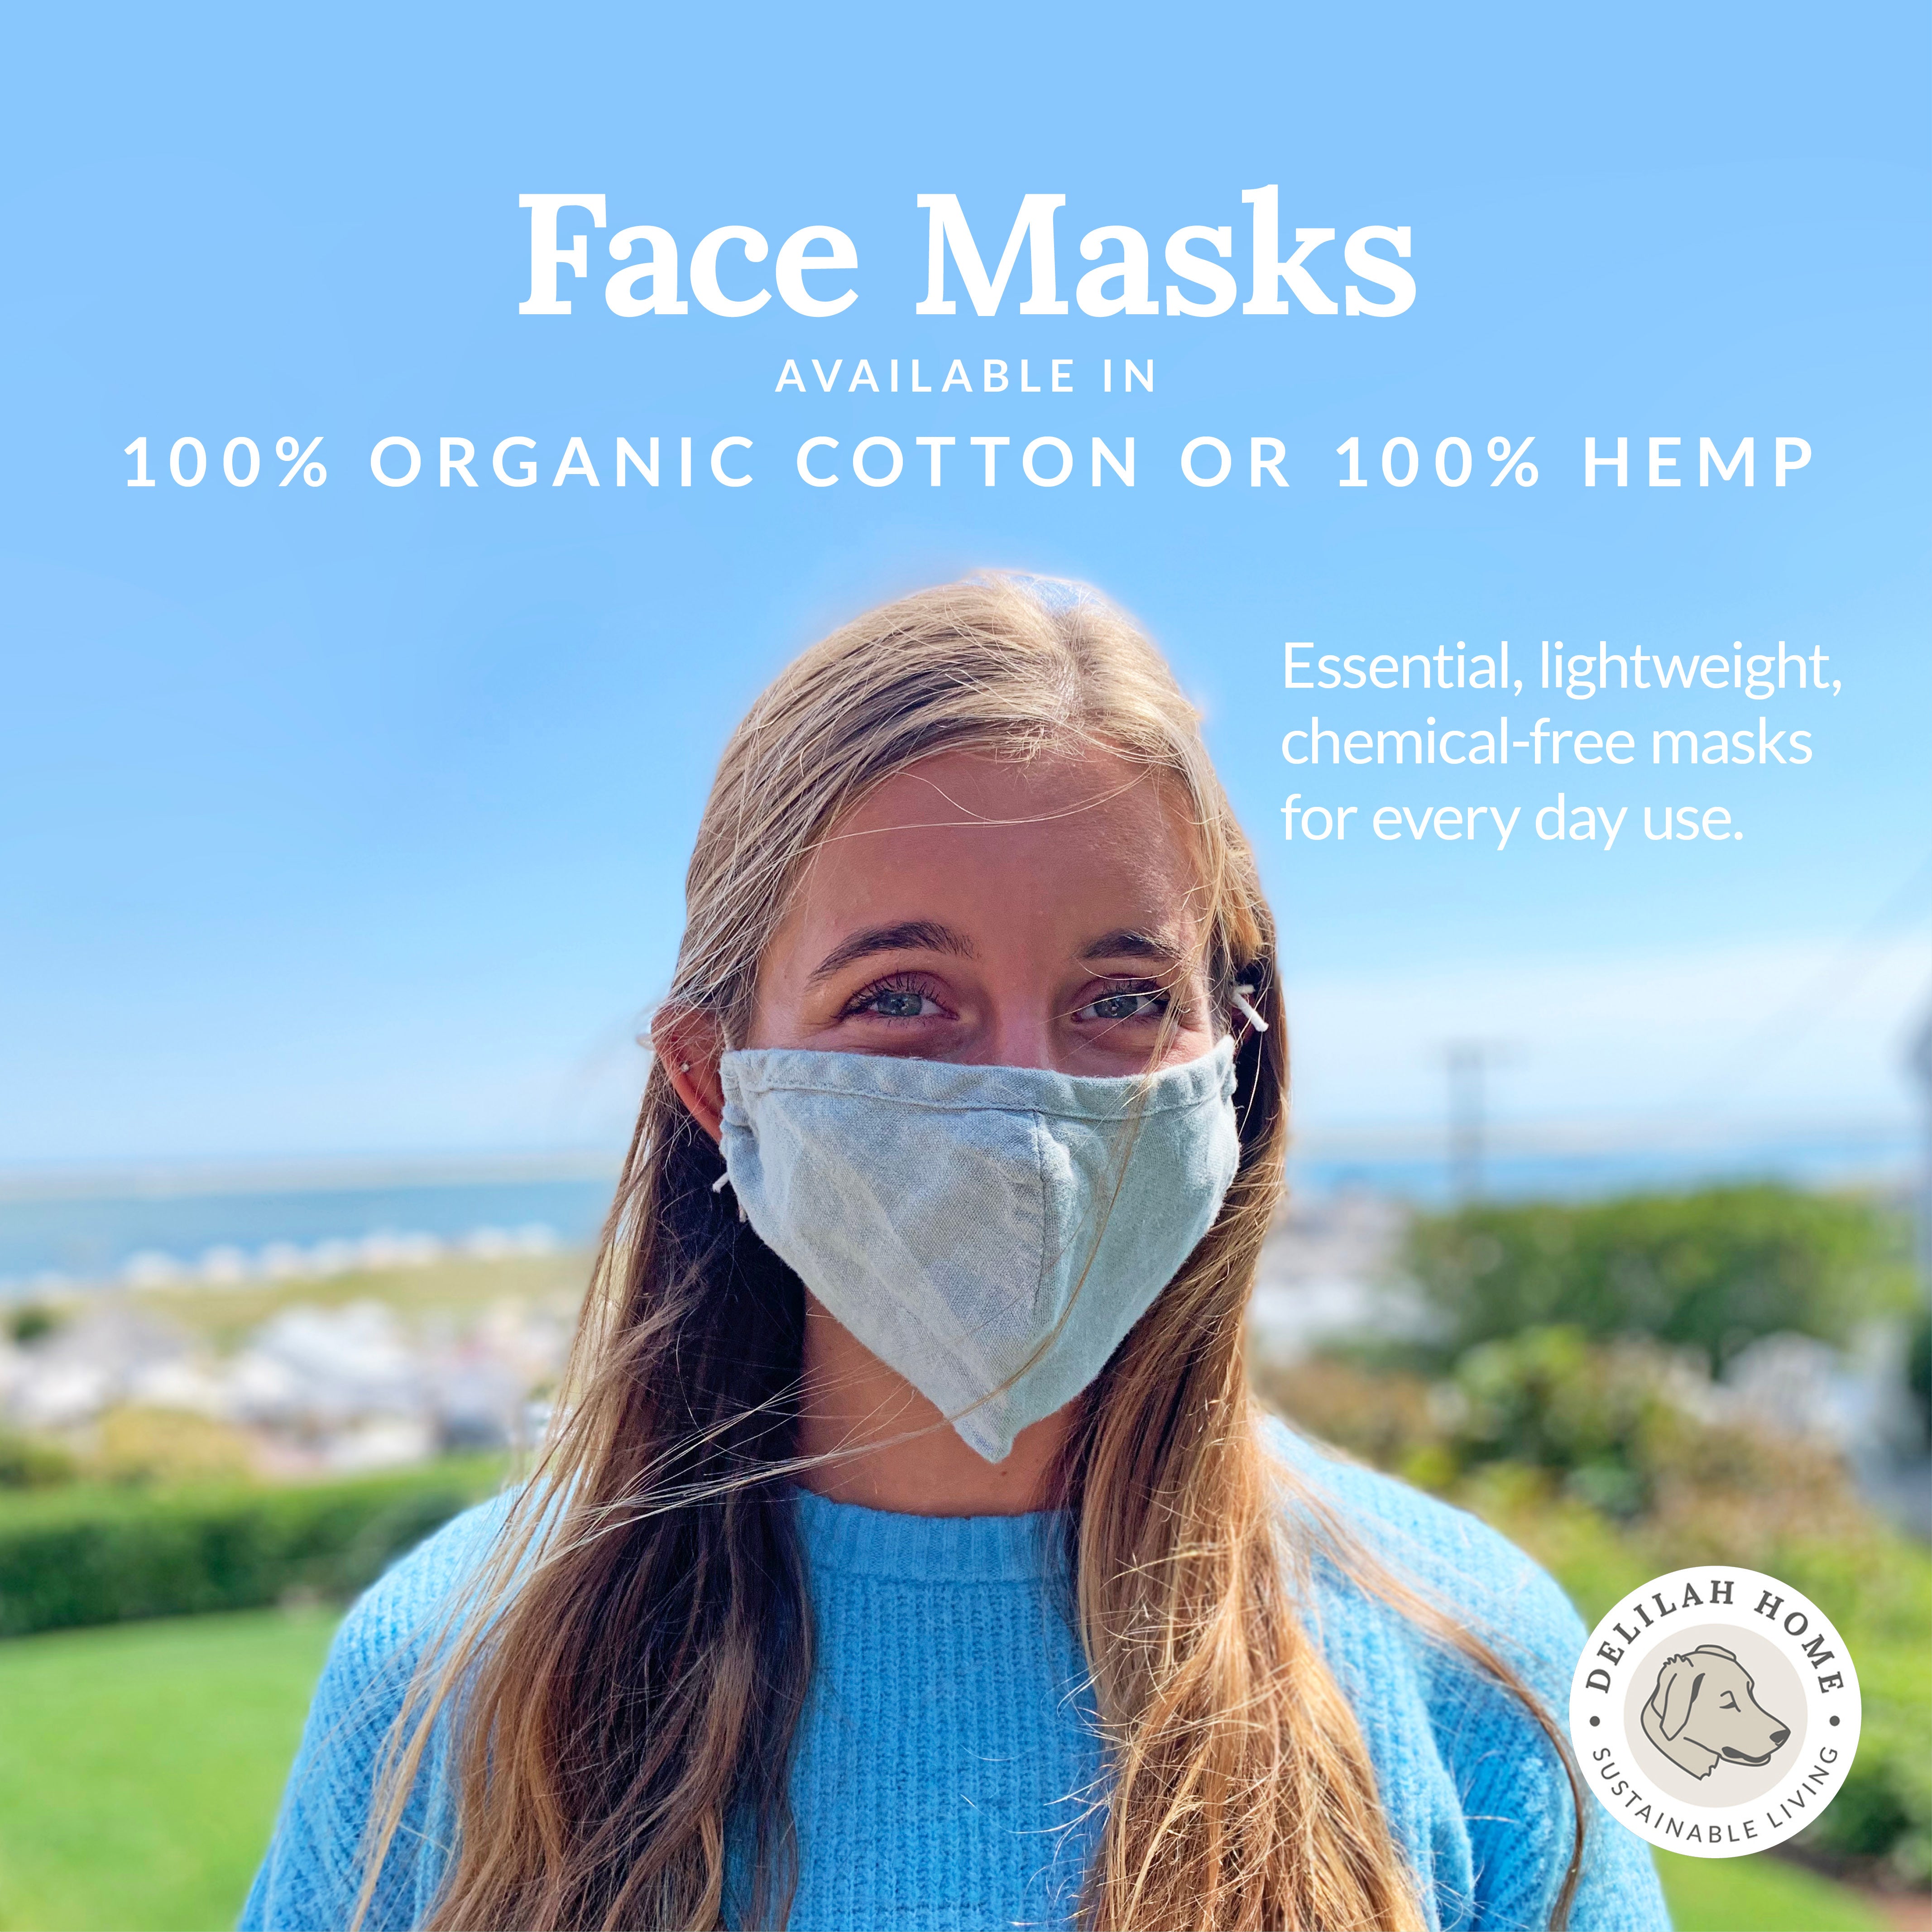 CLOSEOUT: 100% Hemp Face Masks- 4 pack- All Sales Final!